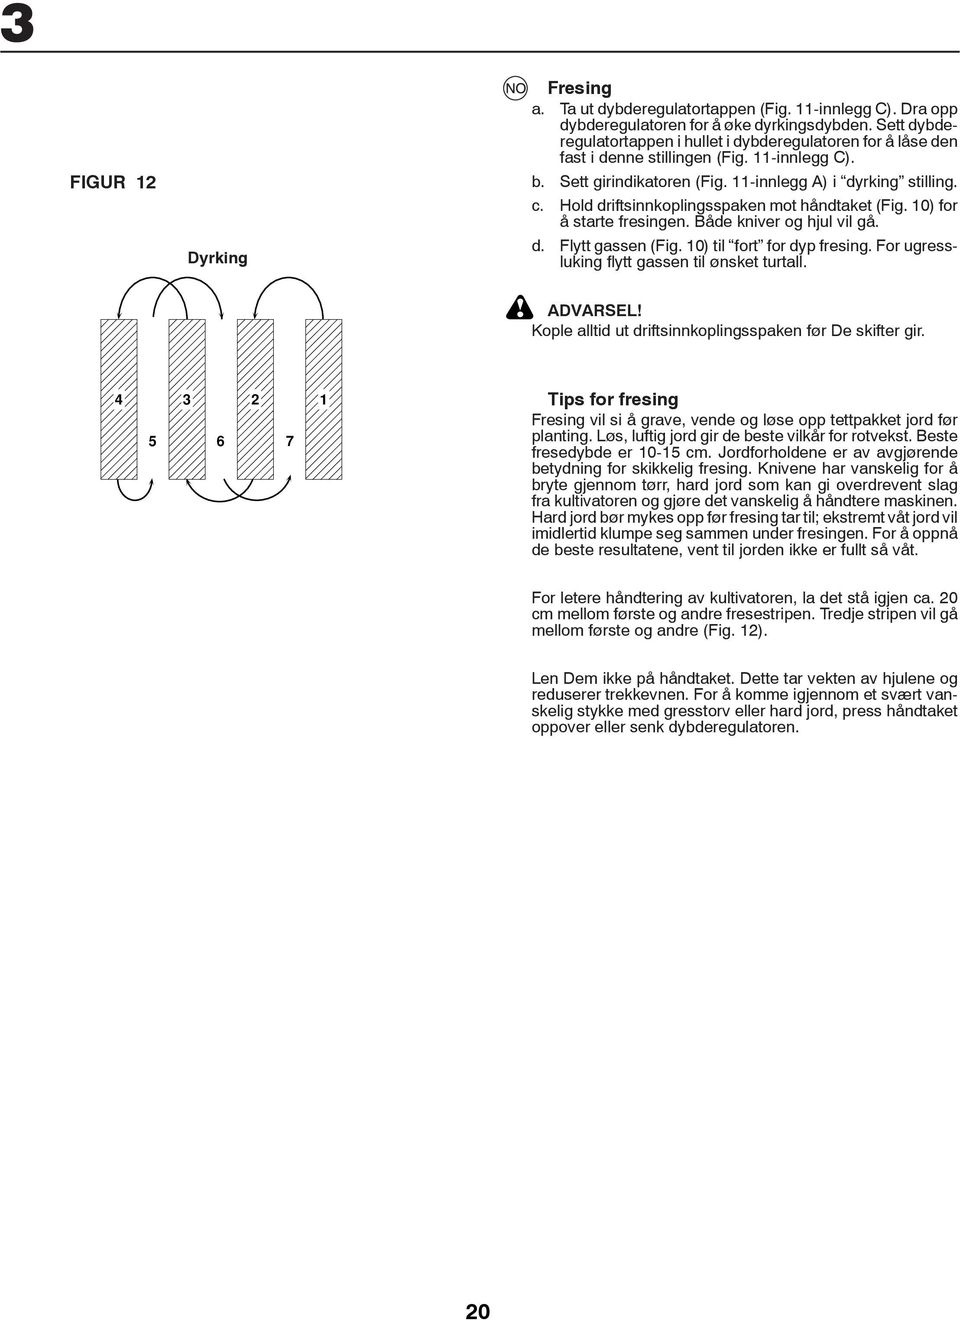 Hold driftsinnkoplingsspaken mot håndtaket (Fig. 0) for å starte fresingen. Både kniver og hjul vil gå. d. Flytt gassen (Fig. 0) til fort for dyp fresing.